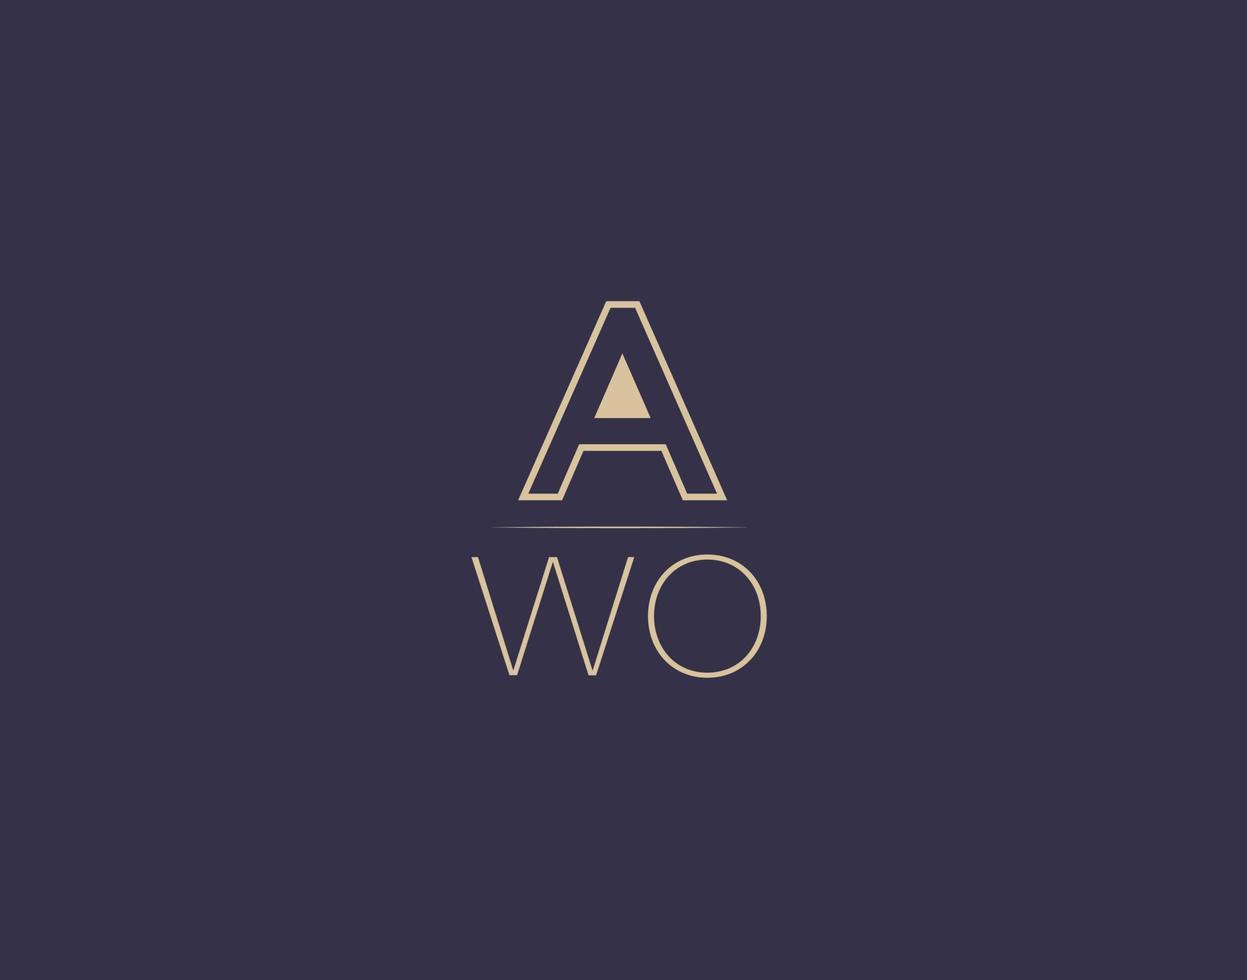 awo lettre logo design images vectorielles minimalistes modernes vecteur